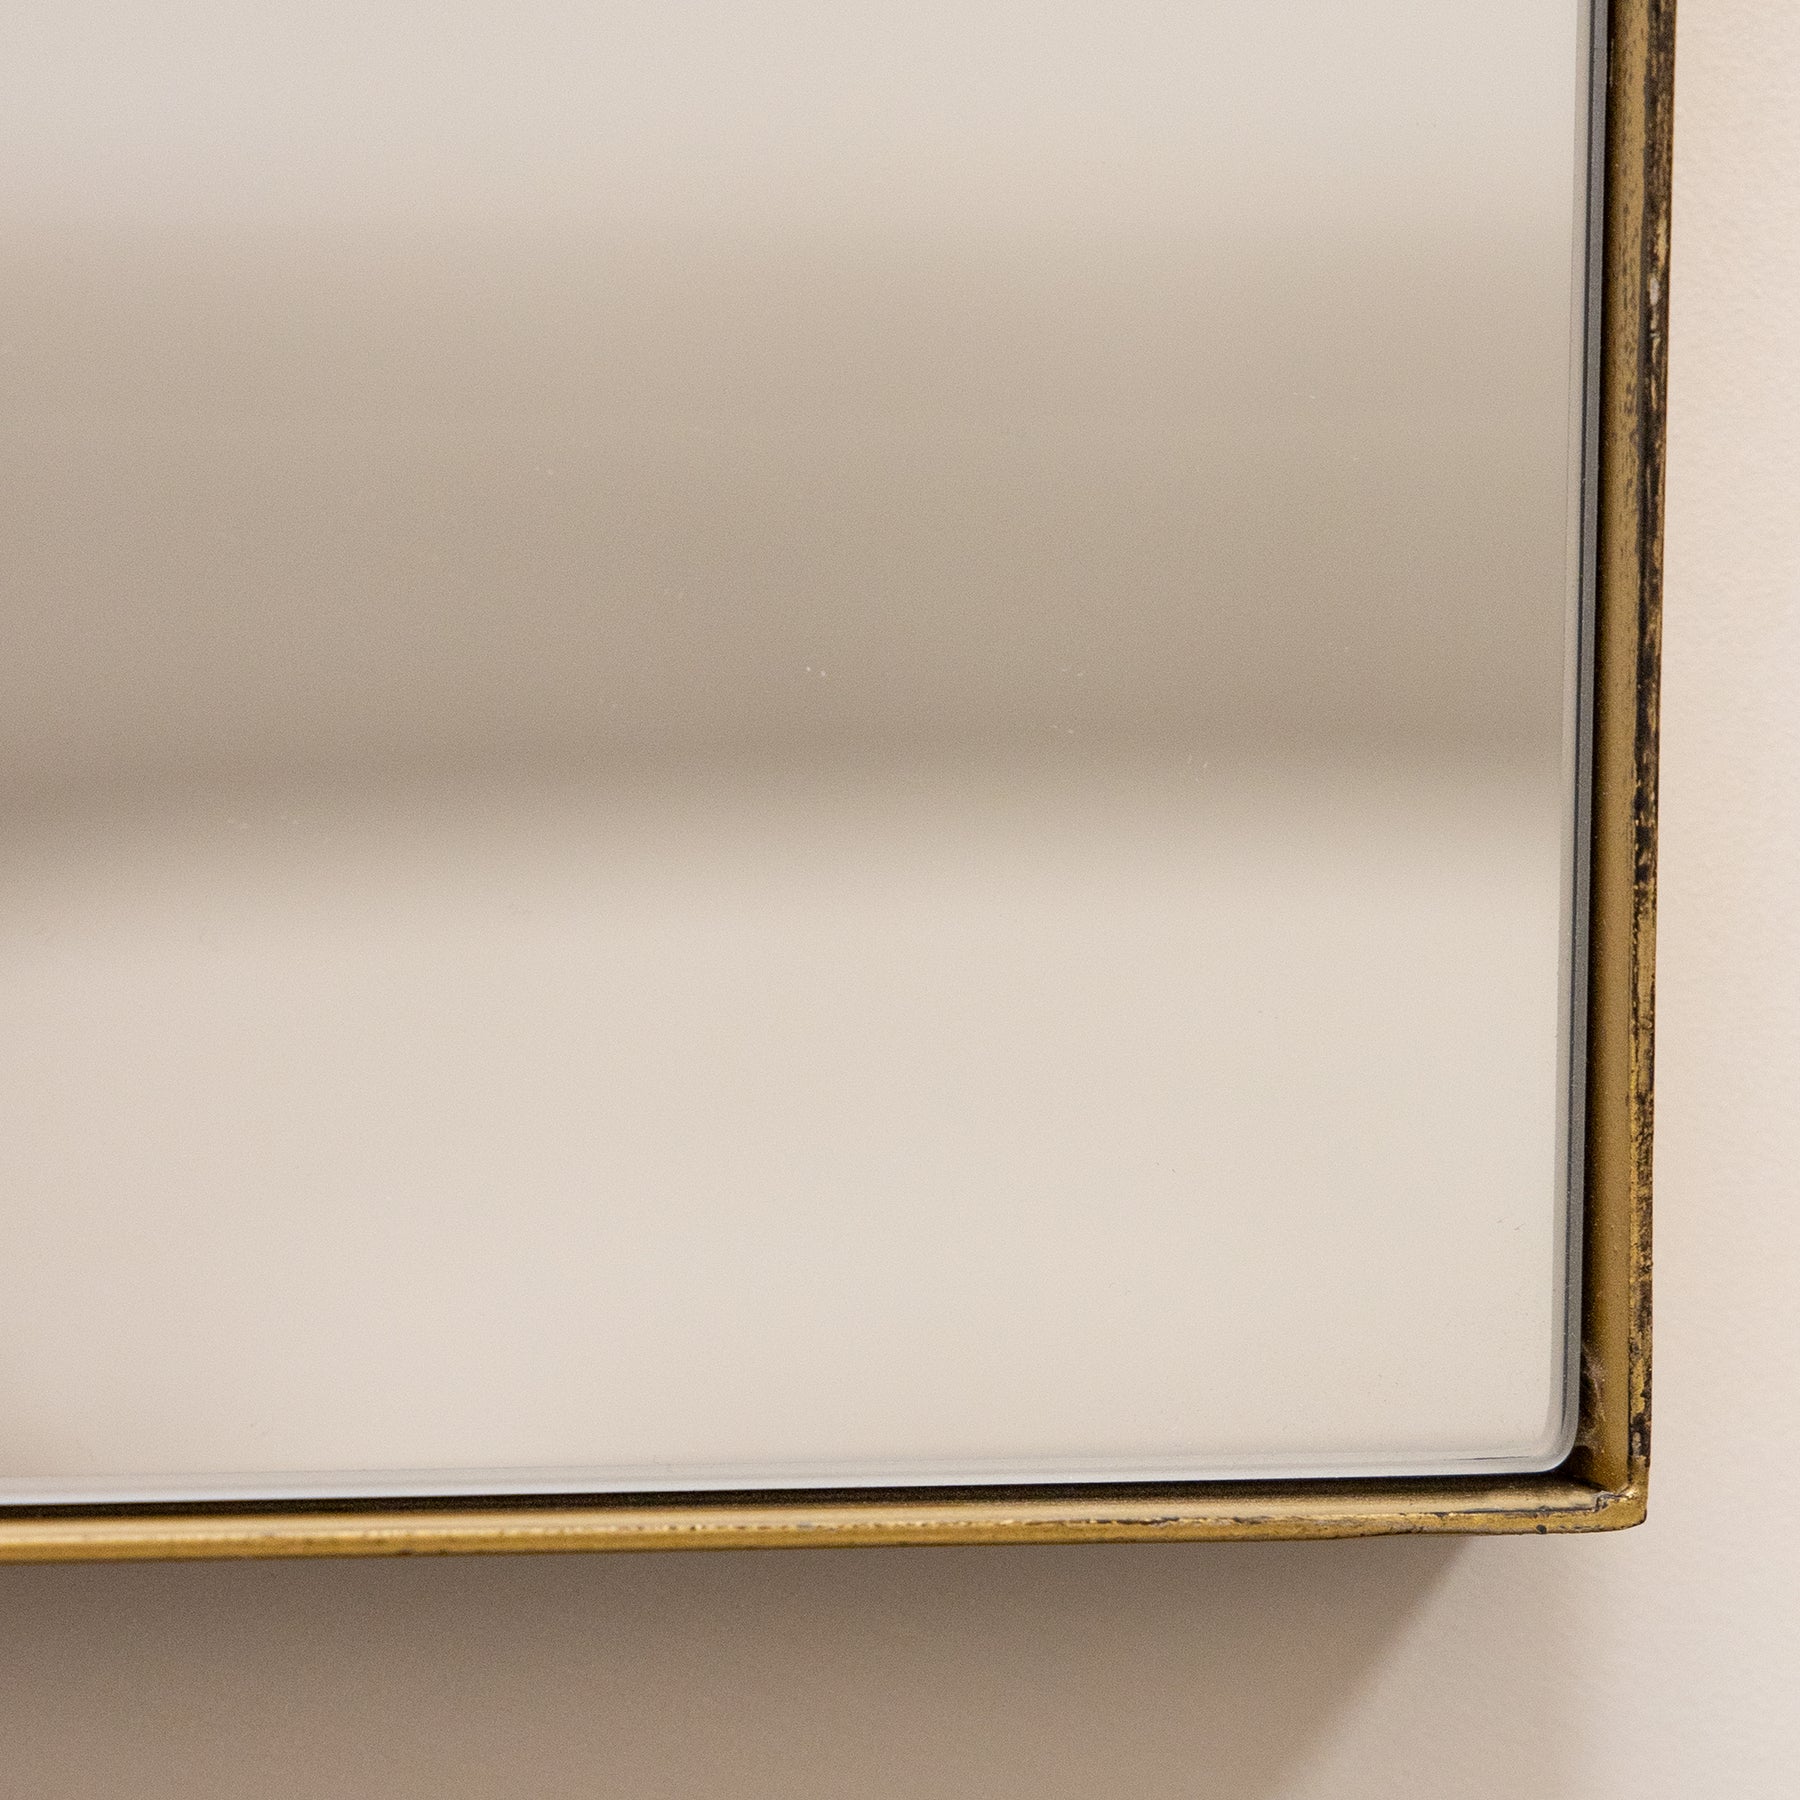 Alternate detail shot of Gold Rectangular Metal Large Wall Mirror corner